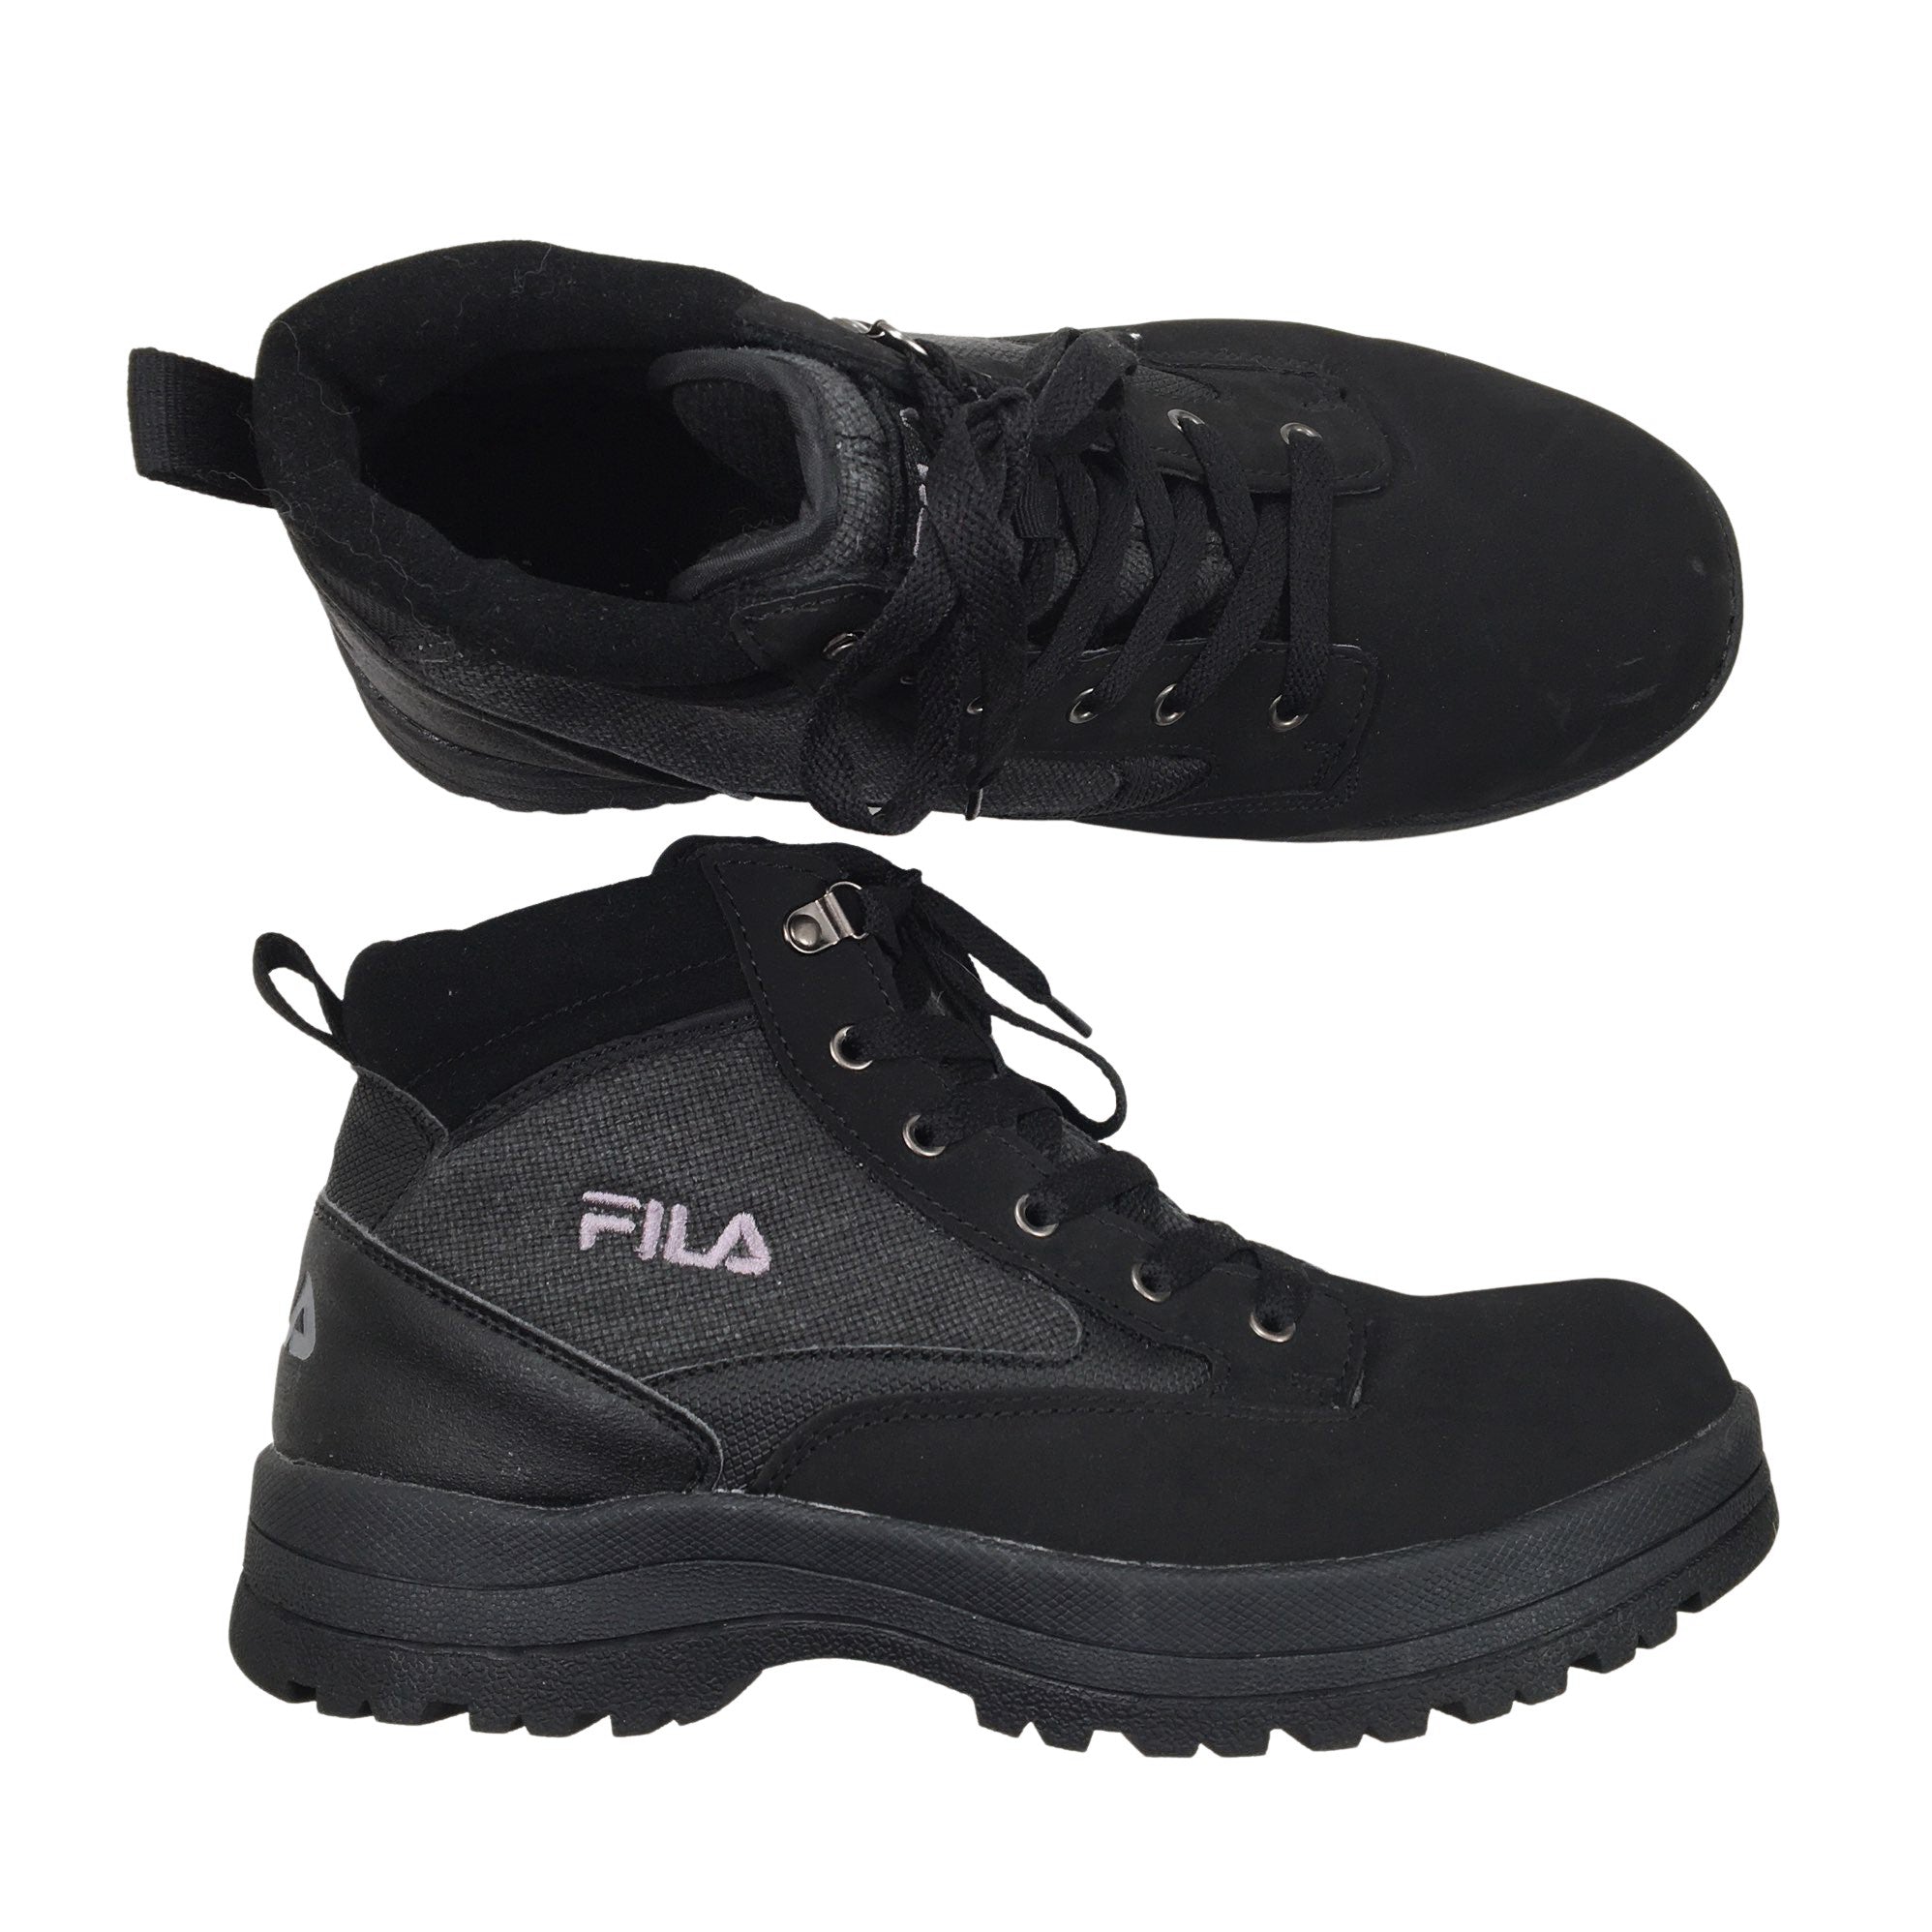 Held og lykke vandfald T Men's Fila Hiking shoes, size 45 (Black) | Emmy